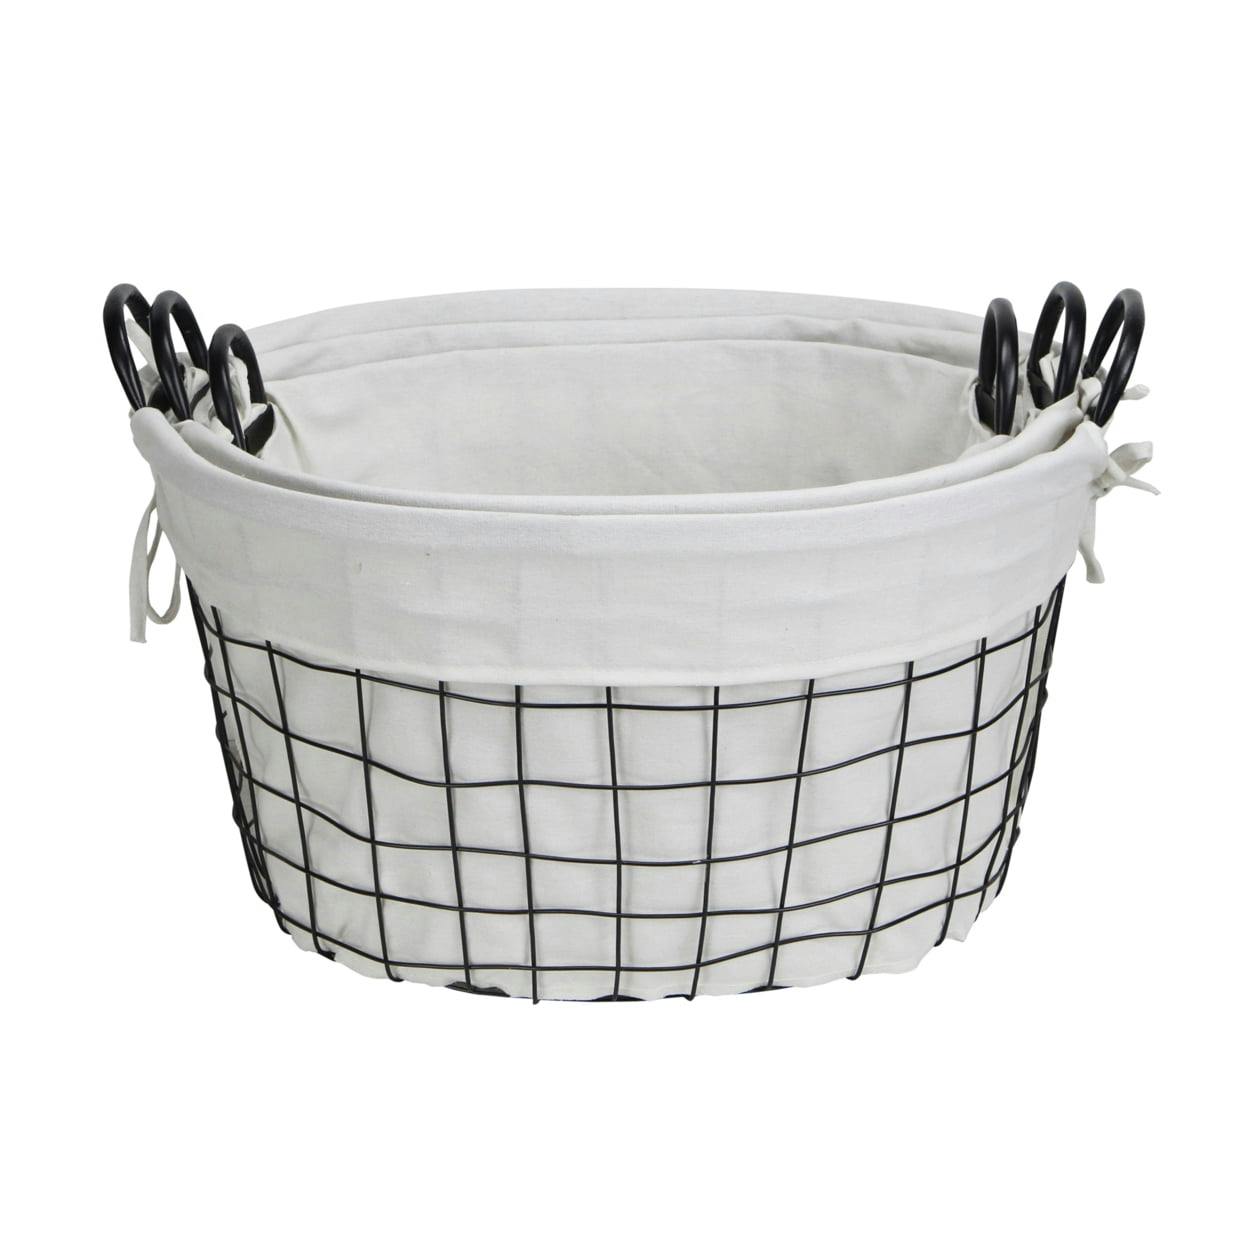 Elegant Black Metal & Linen Oval Storage Baskets - Set of 3